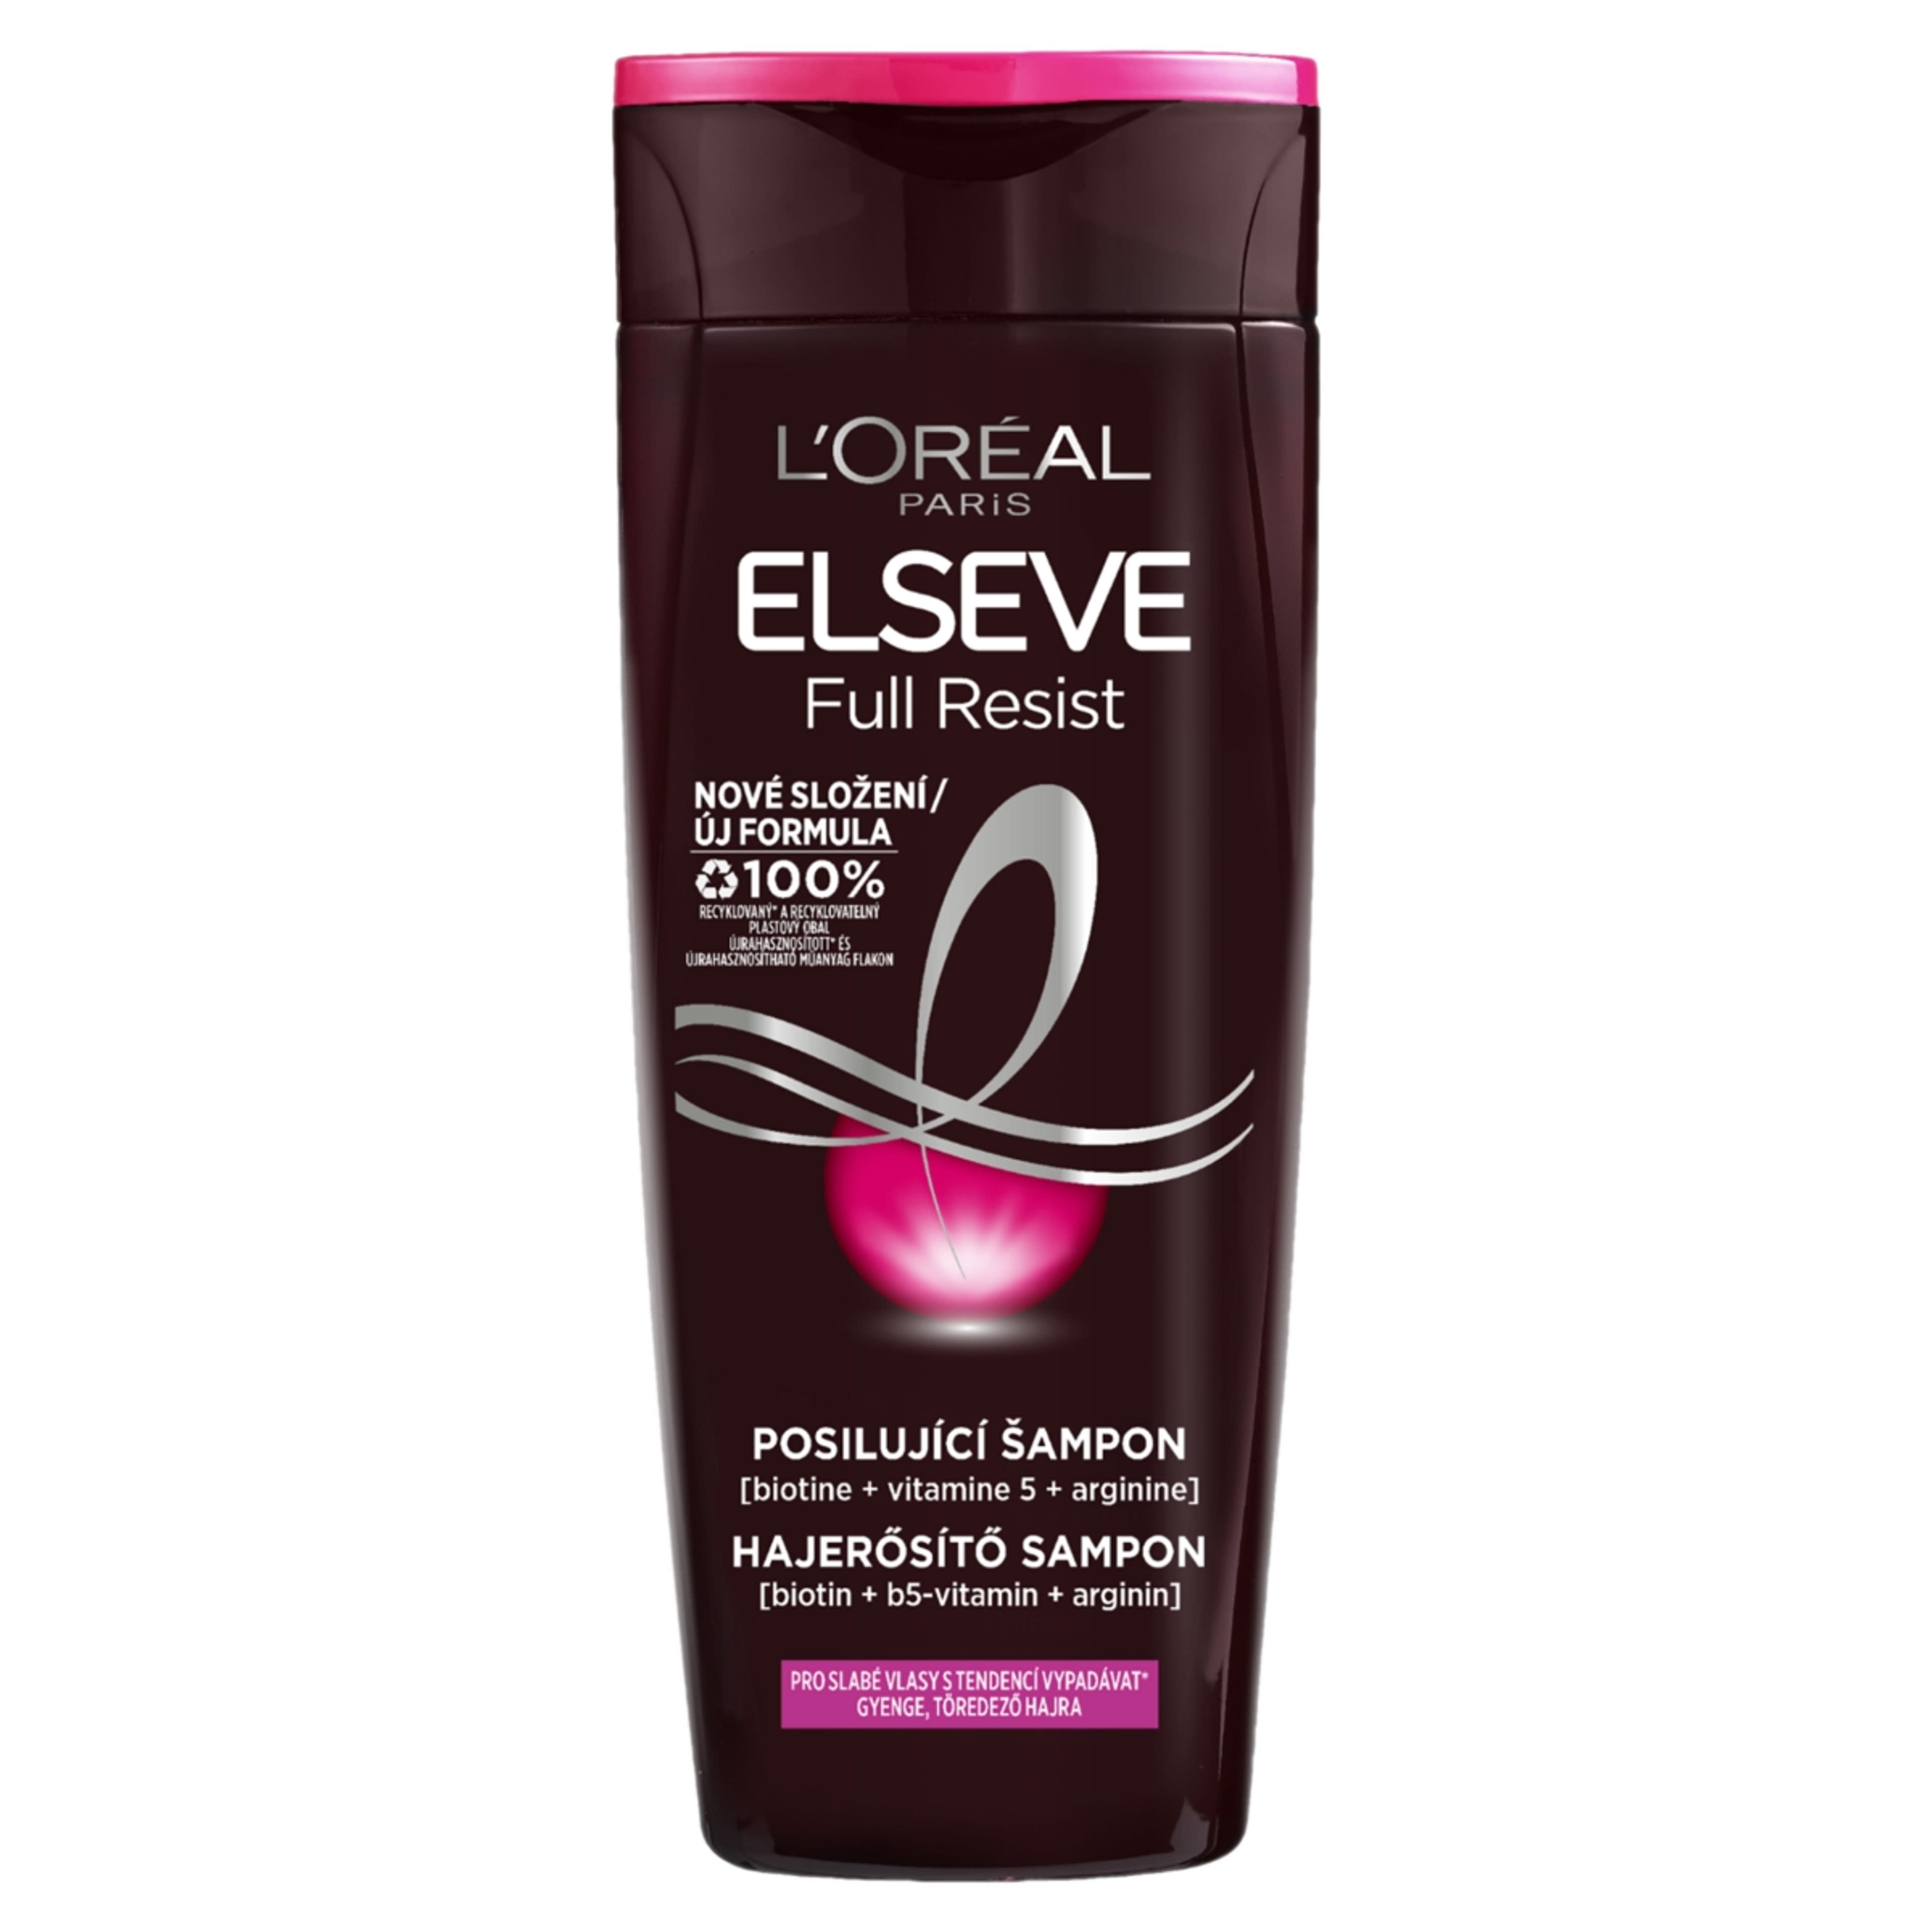 L'Oréal Paris Elseve Full Resist hajerősítő sampon - 400 ml